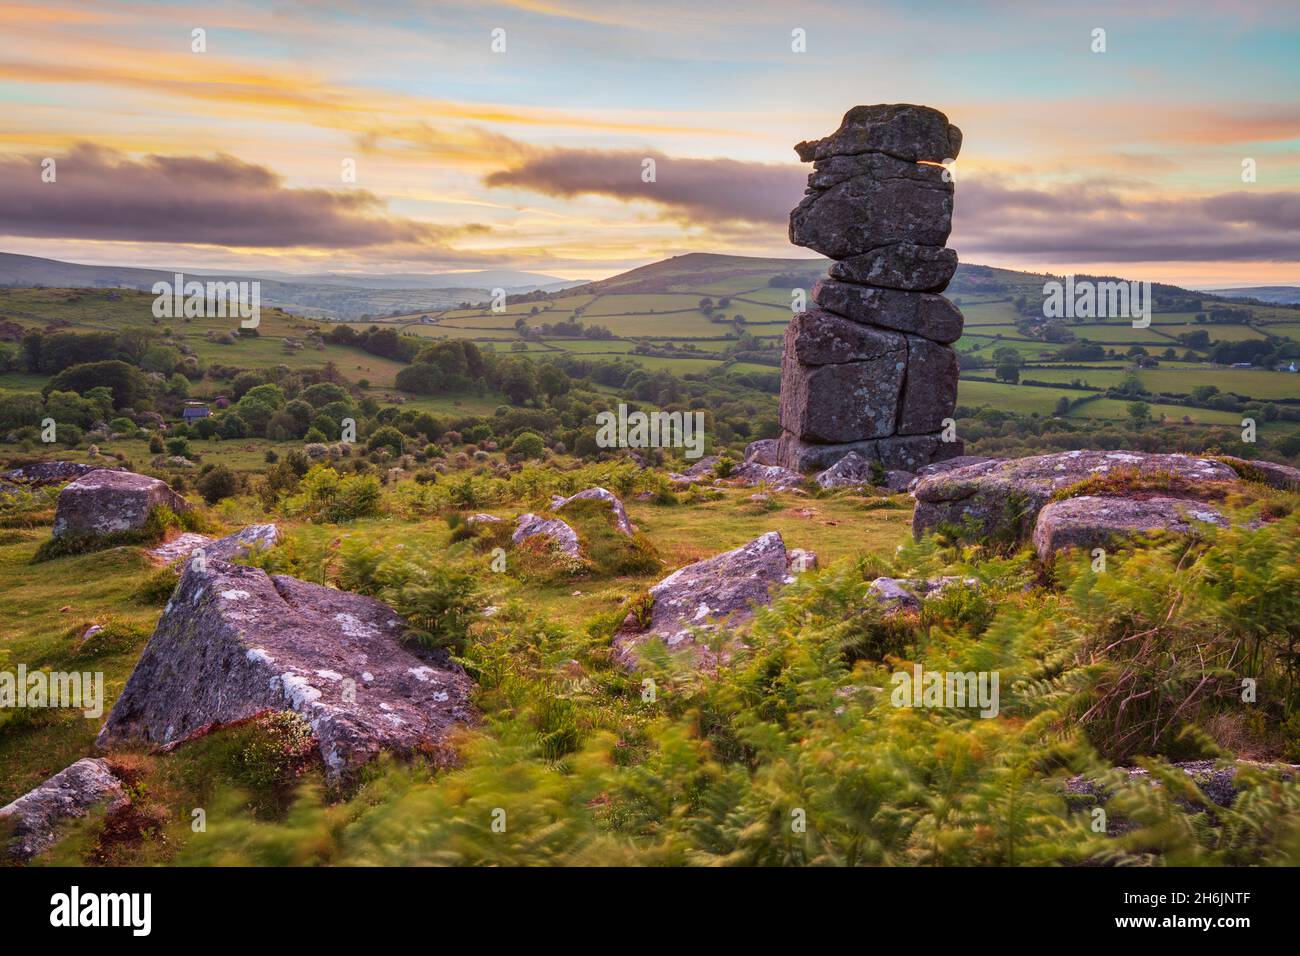 Formazione di roccia del naso di Bowerman al tramonto, vicino Manaton, Parco Nazionale di Dartmoor, Devon, Inghilterra, Regno Unito, Europa Foto Stock